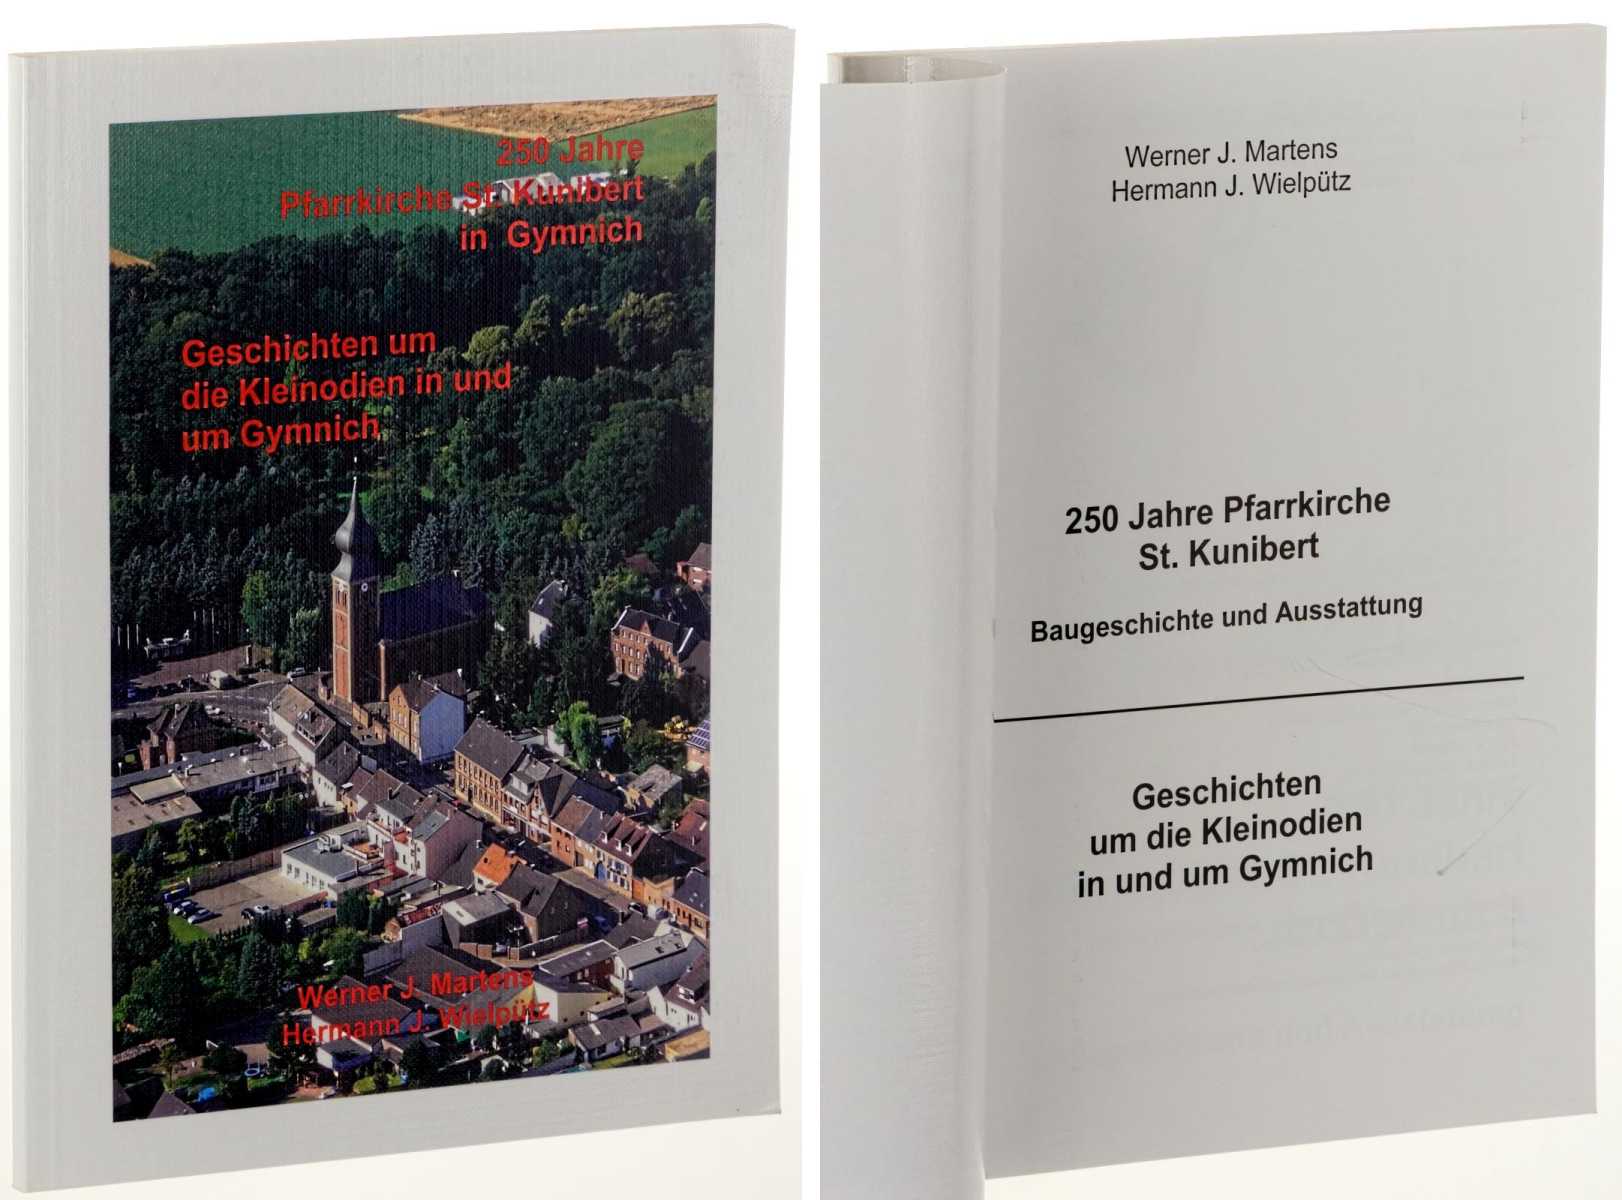 Martens, Werner J./ Hermann J. Wielpütz:  250 Jahre Pfarrerkirche St. Kunibert in Gymnich. Baugeschichte und Ausstattung  Geschichten um die Kleinodien in und um Gymnich. 